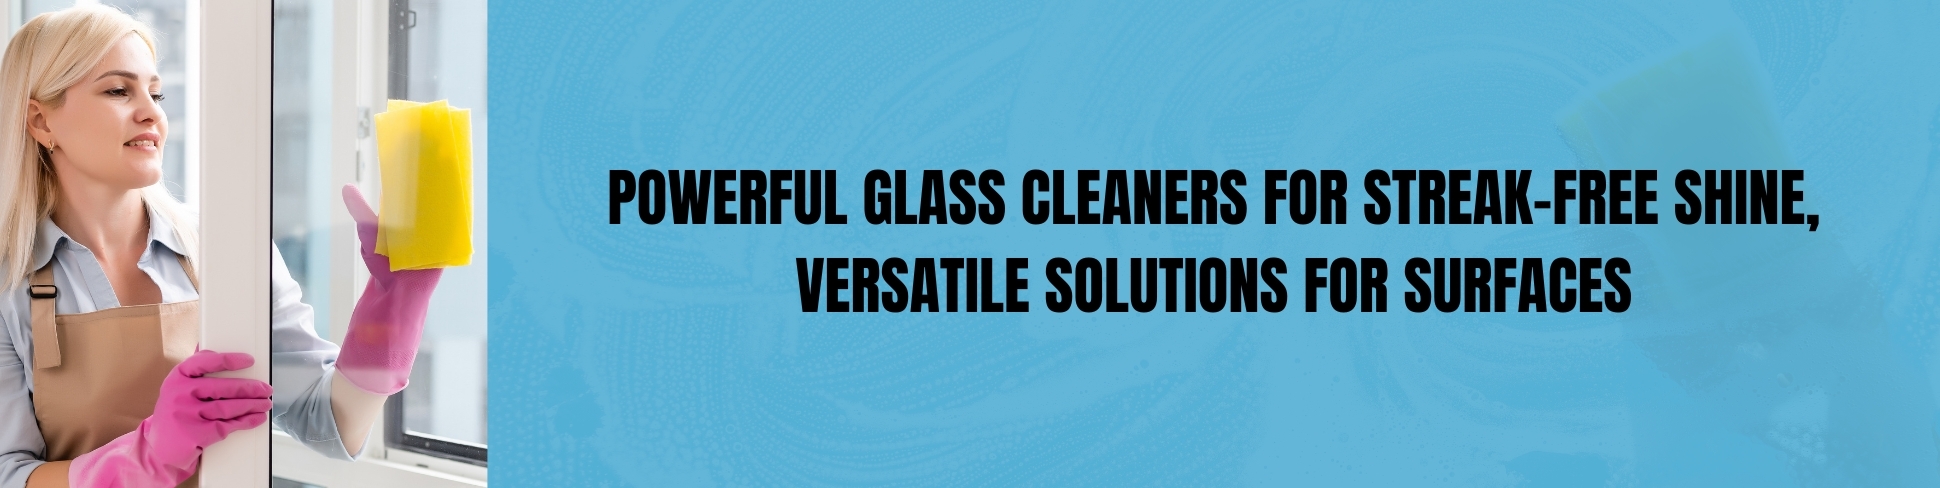 glass-cleaners.jpg